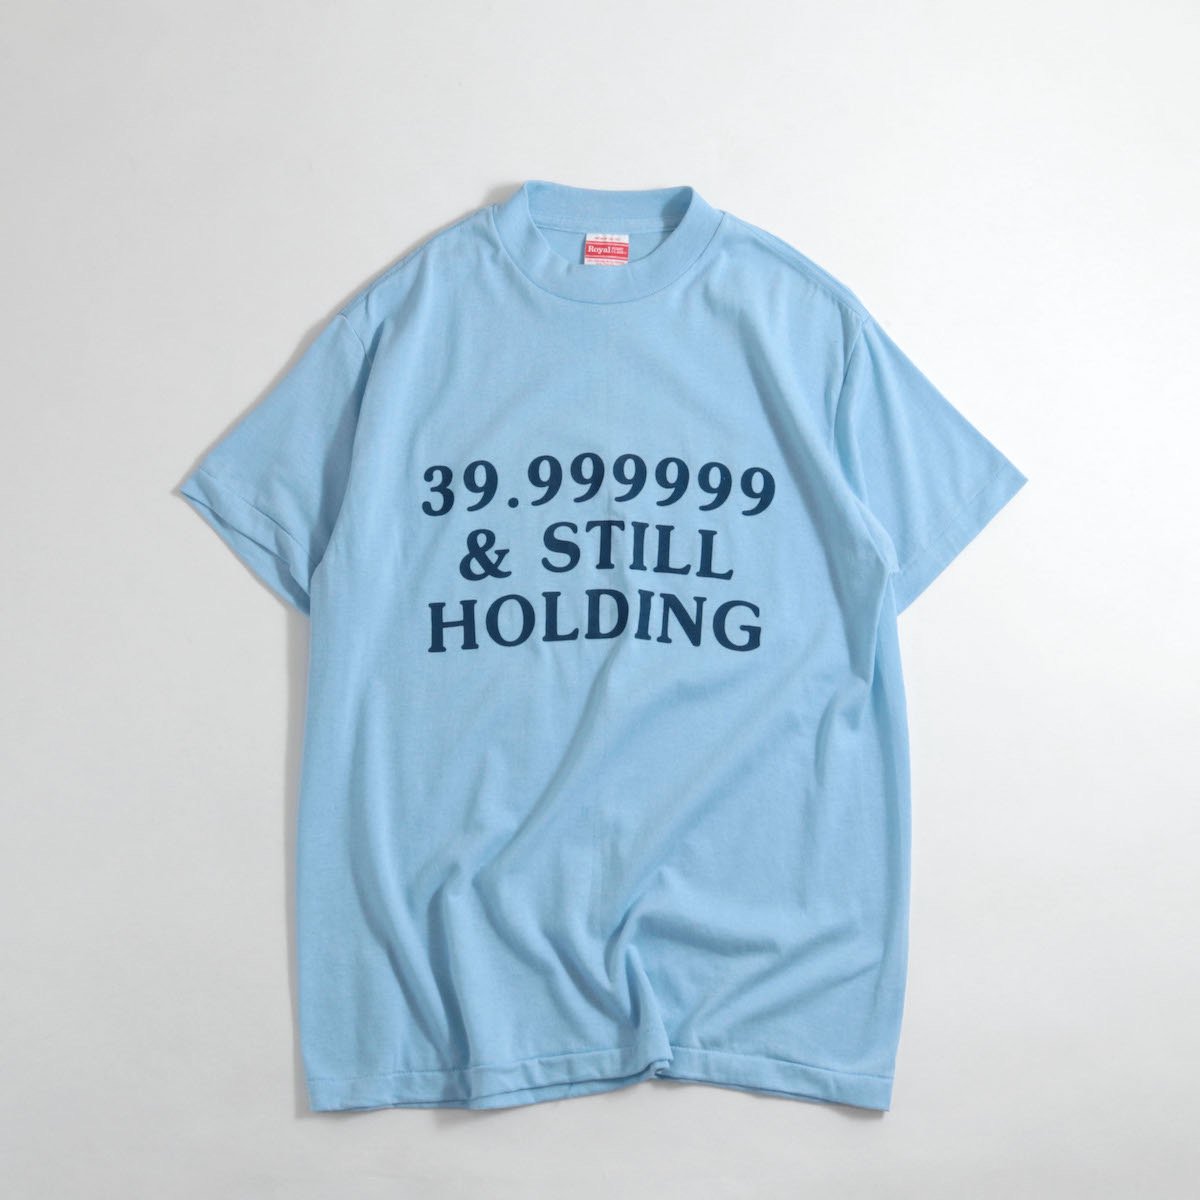 レディース] 1980s USA製 39.999999 プリントTシャツ ライトブルー